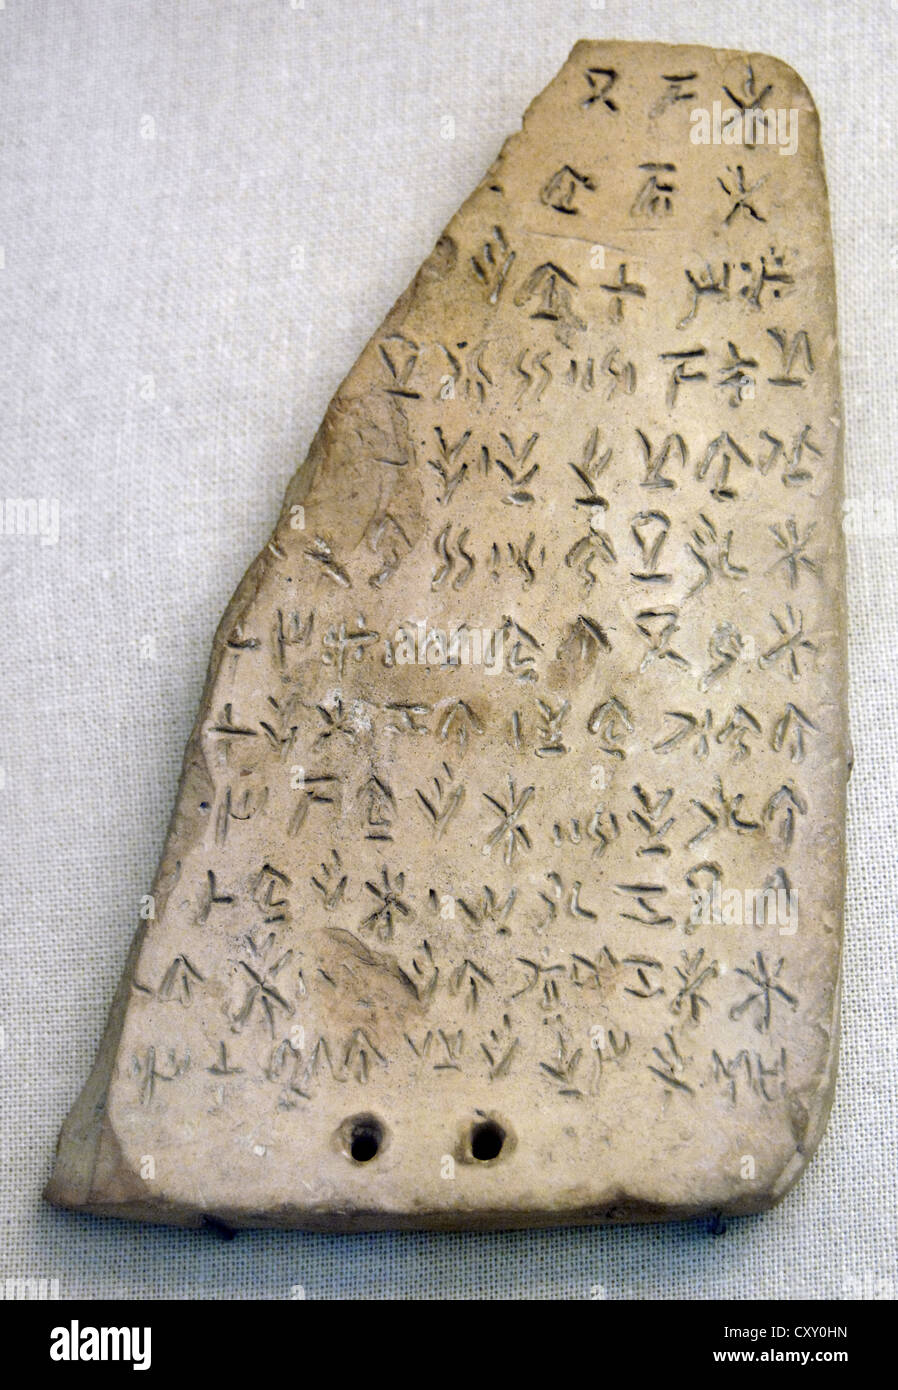 Tablet de terracota con la inscripción en la escritura silábica chipriota. 410-375 A.C. Desde Akanthou. Museo Británico. Londres. Foto de stock